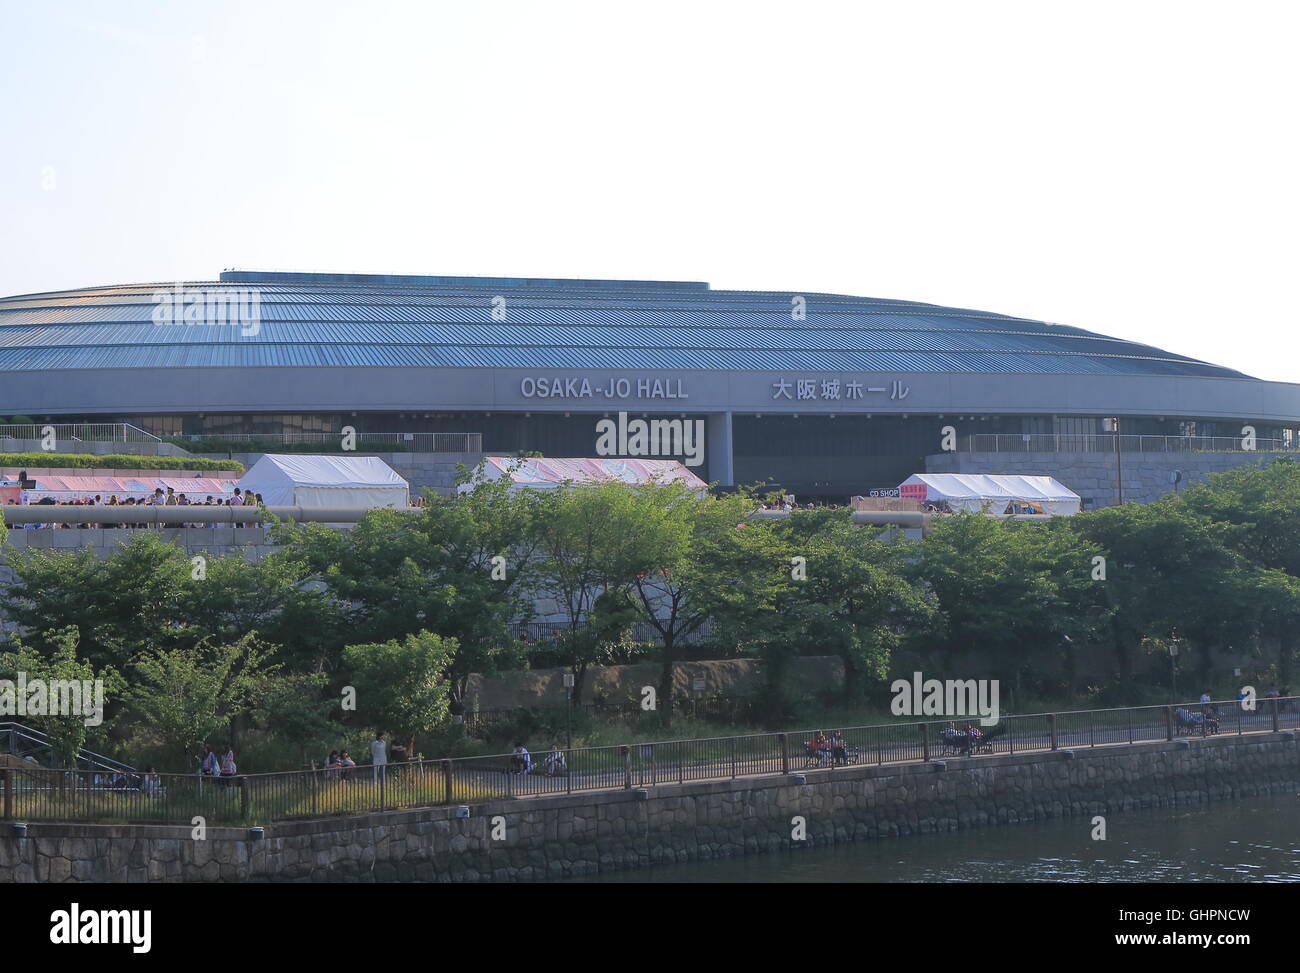 Osakajo Hall di Osaka in Giappone, un multi-purpose arena si trova nella zona di Kyobashi Osaka. Foto Stock